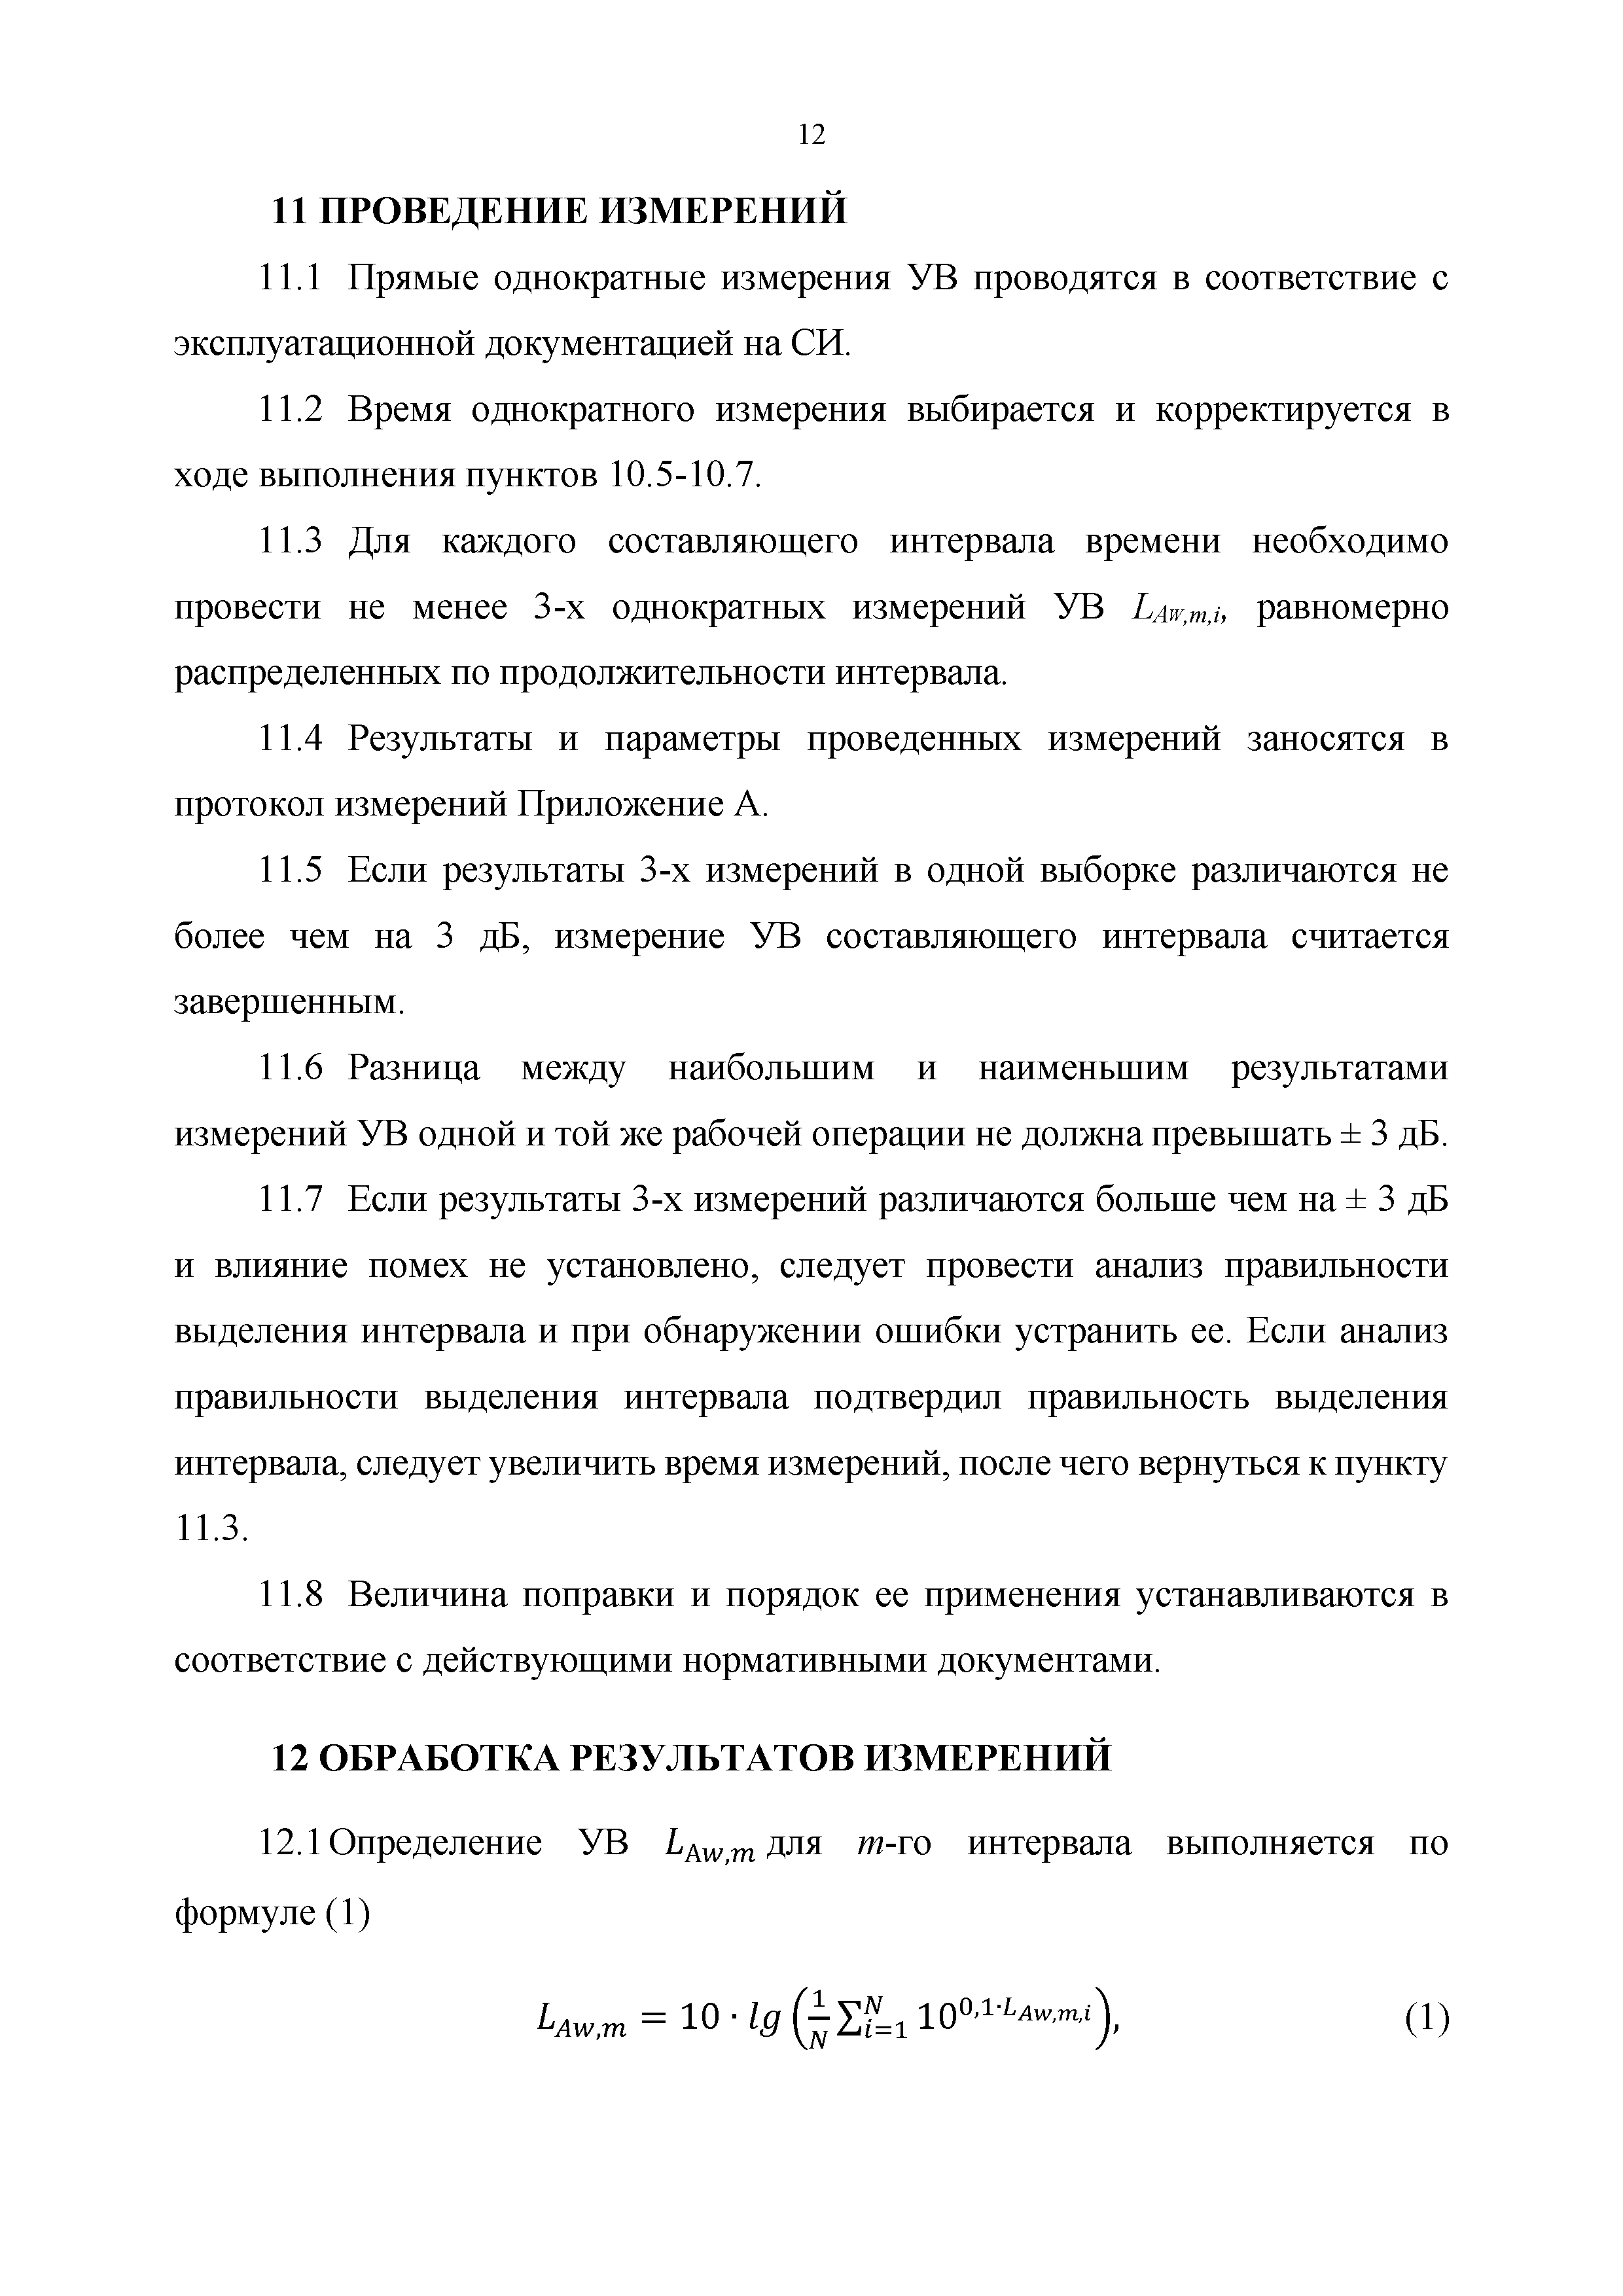 МИ ОВ.ИНТ-05.01-2018